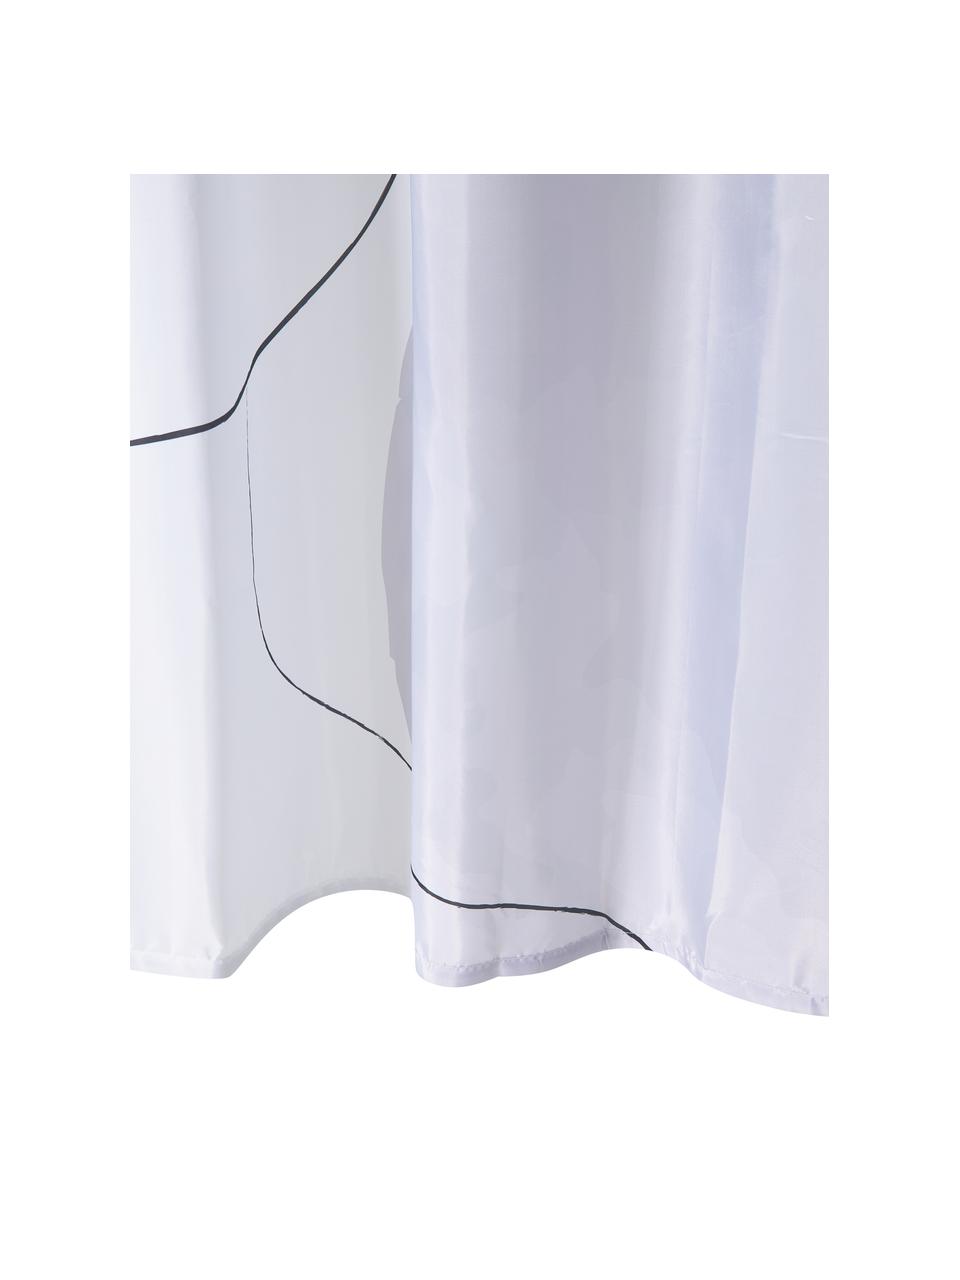 Sprchový závěs s kresbou jedním tahem Face, 100 % polyester, Růžová, bílá, šedá, černá, Š 180 cm, D 200 cm